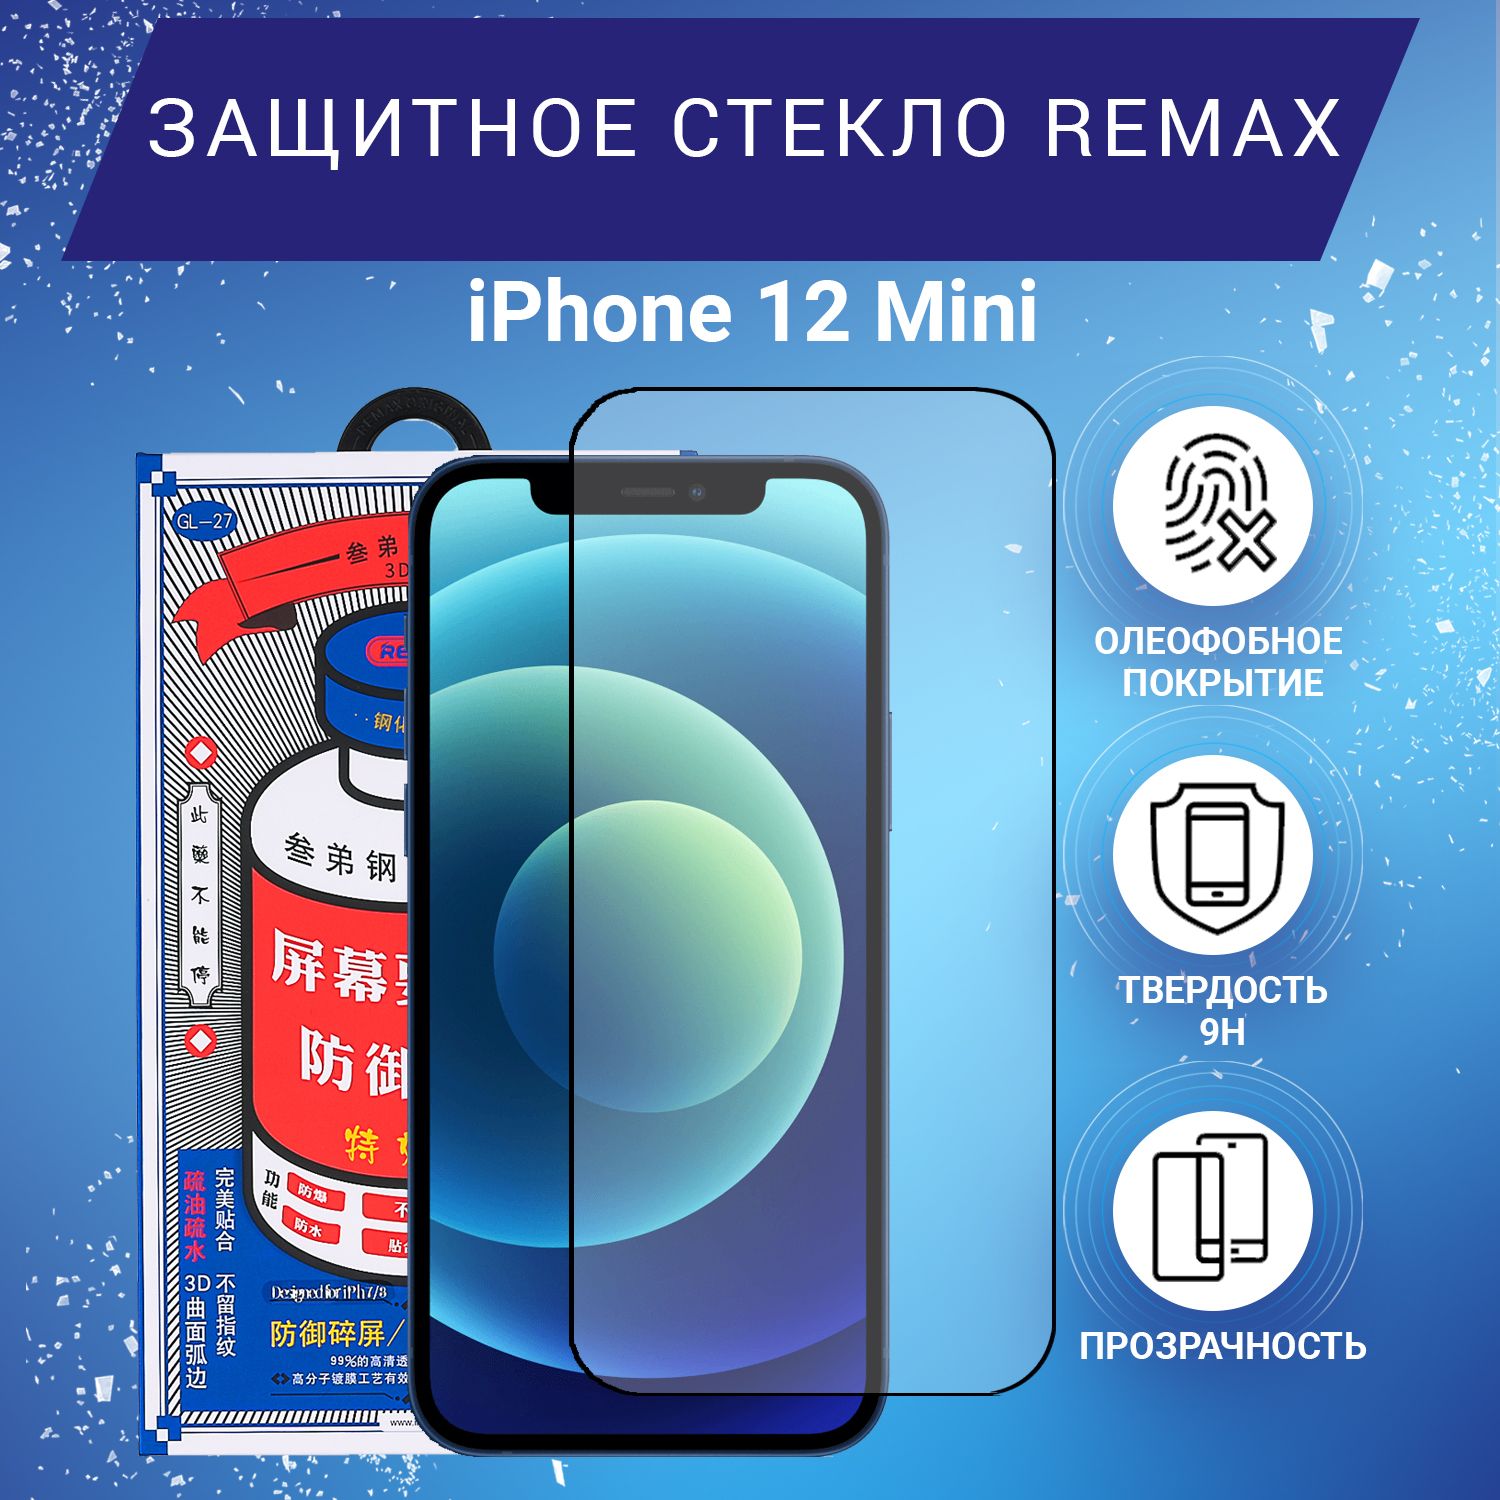 3d и 2d стекло Remax для iphone 15 Pro Max. Стекло remax iphone 15